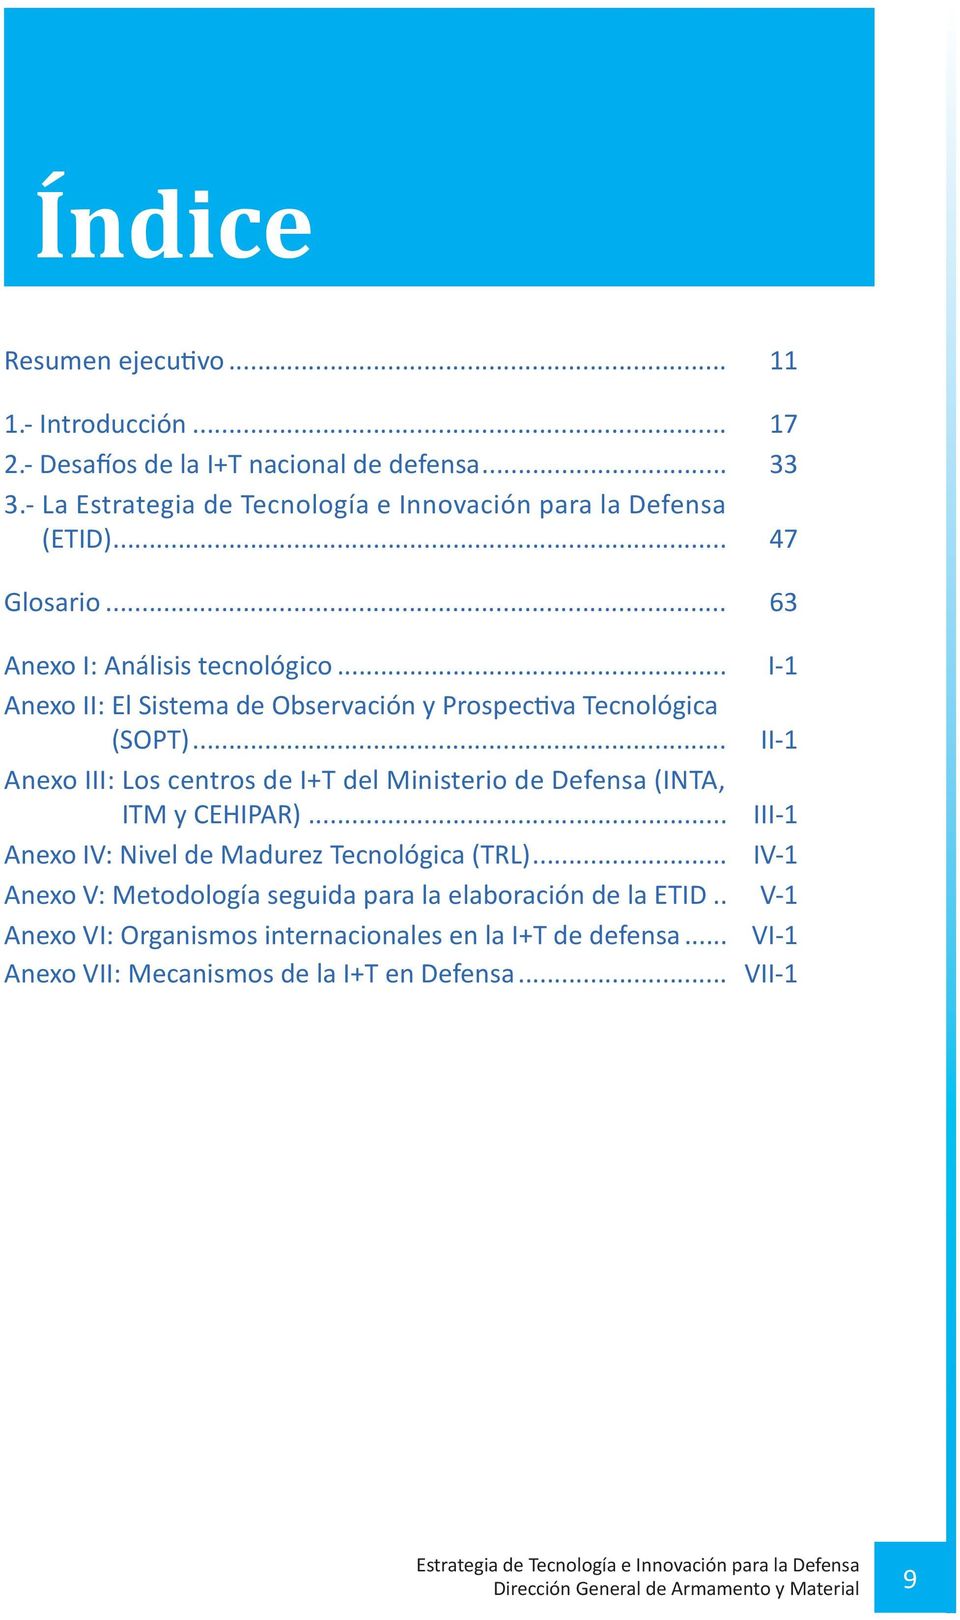 .. II-1 Anexo III: Los centros de I+T del Ministerio de Defensa (INTA, ITM y CEHIPAR)... III-1 Anexo IV: Nivel de Madurez Tecnológica (TRL).